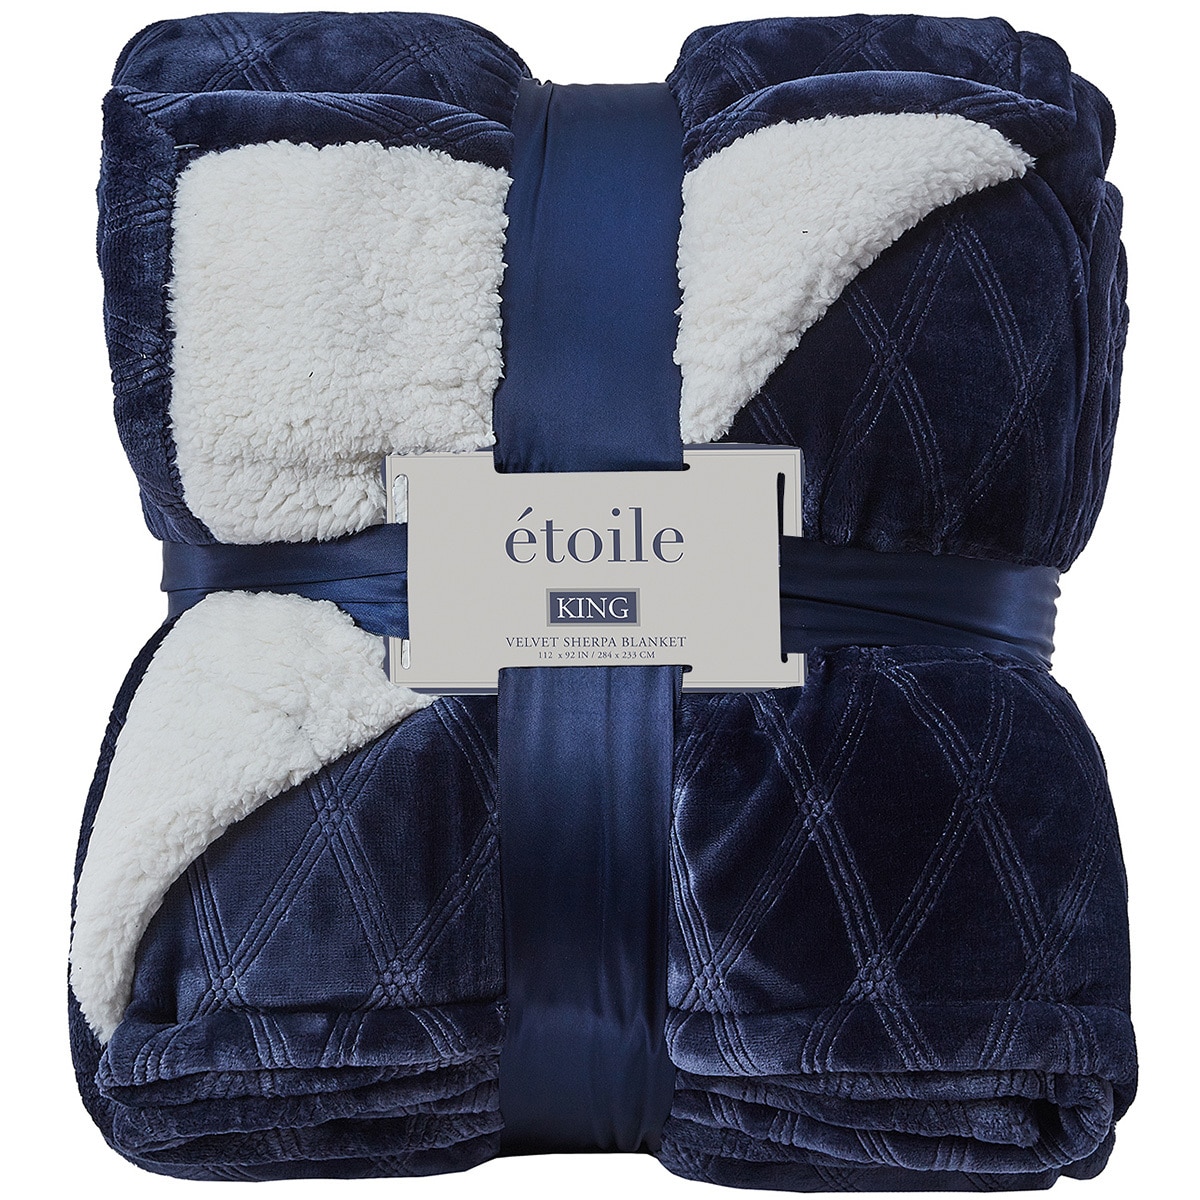 Etoile Velvet Sherpa Blanket (Size King) - Blue